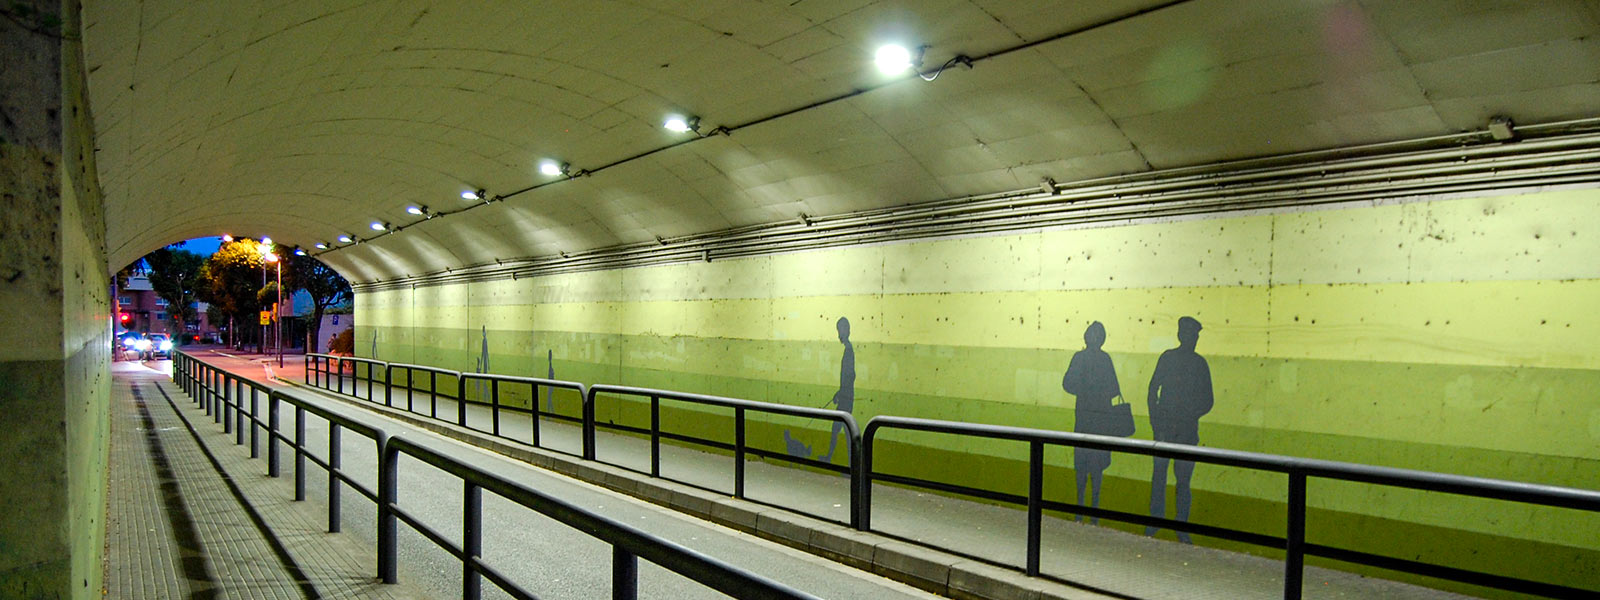 SANT JOAN DESPÍ
ILUMINACIÓN TÚNELES
La luminaria Milan S ilumina los pasos subterráneos